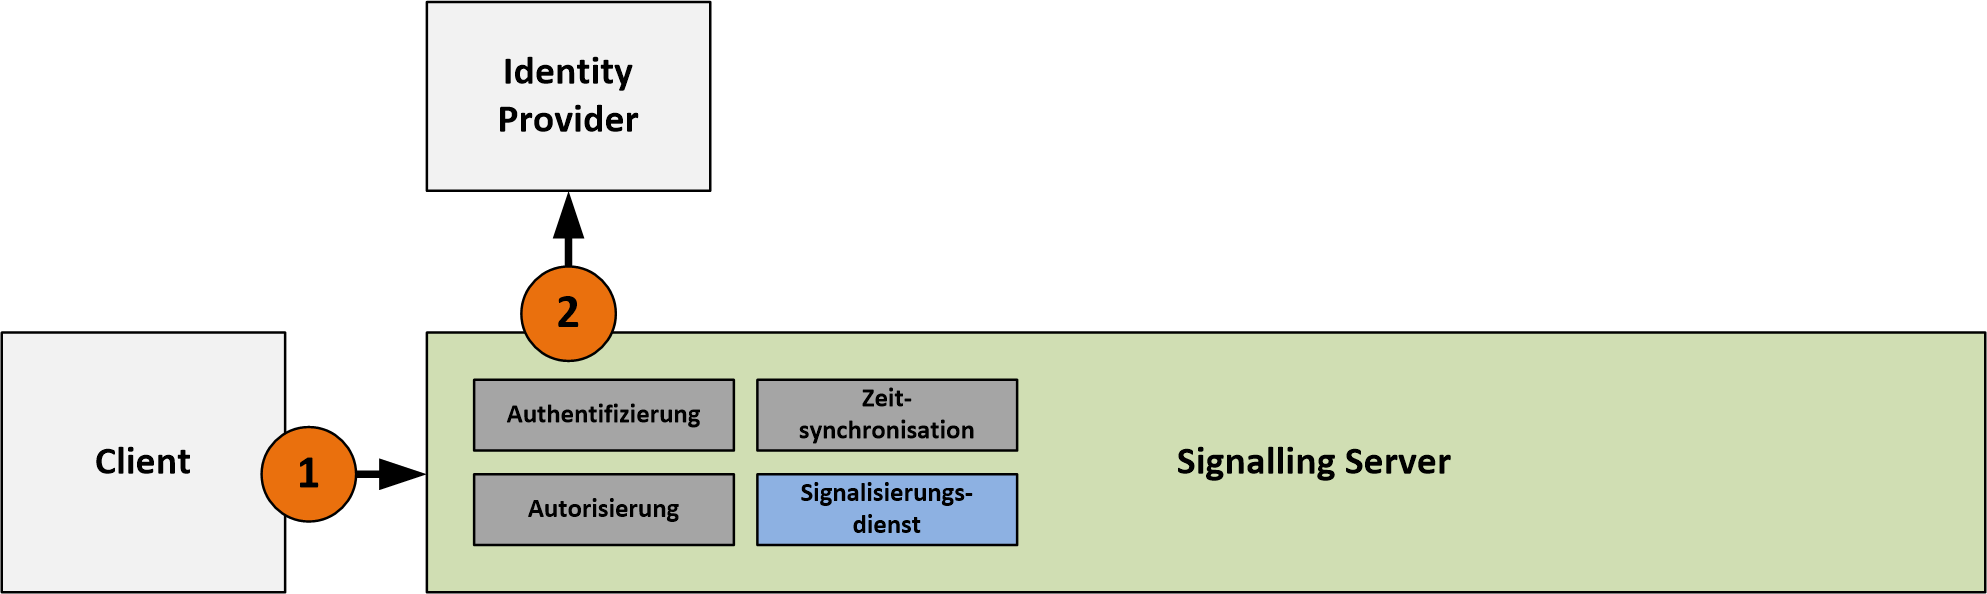 Technische Architektur - Signalling Server